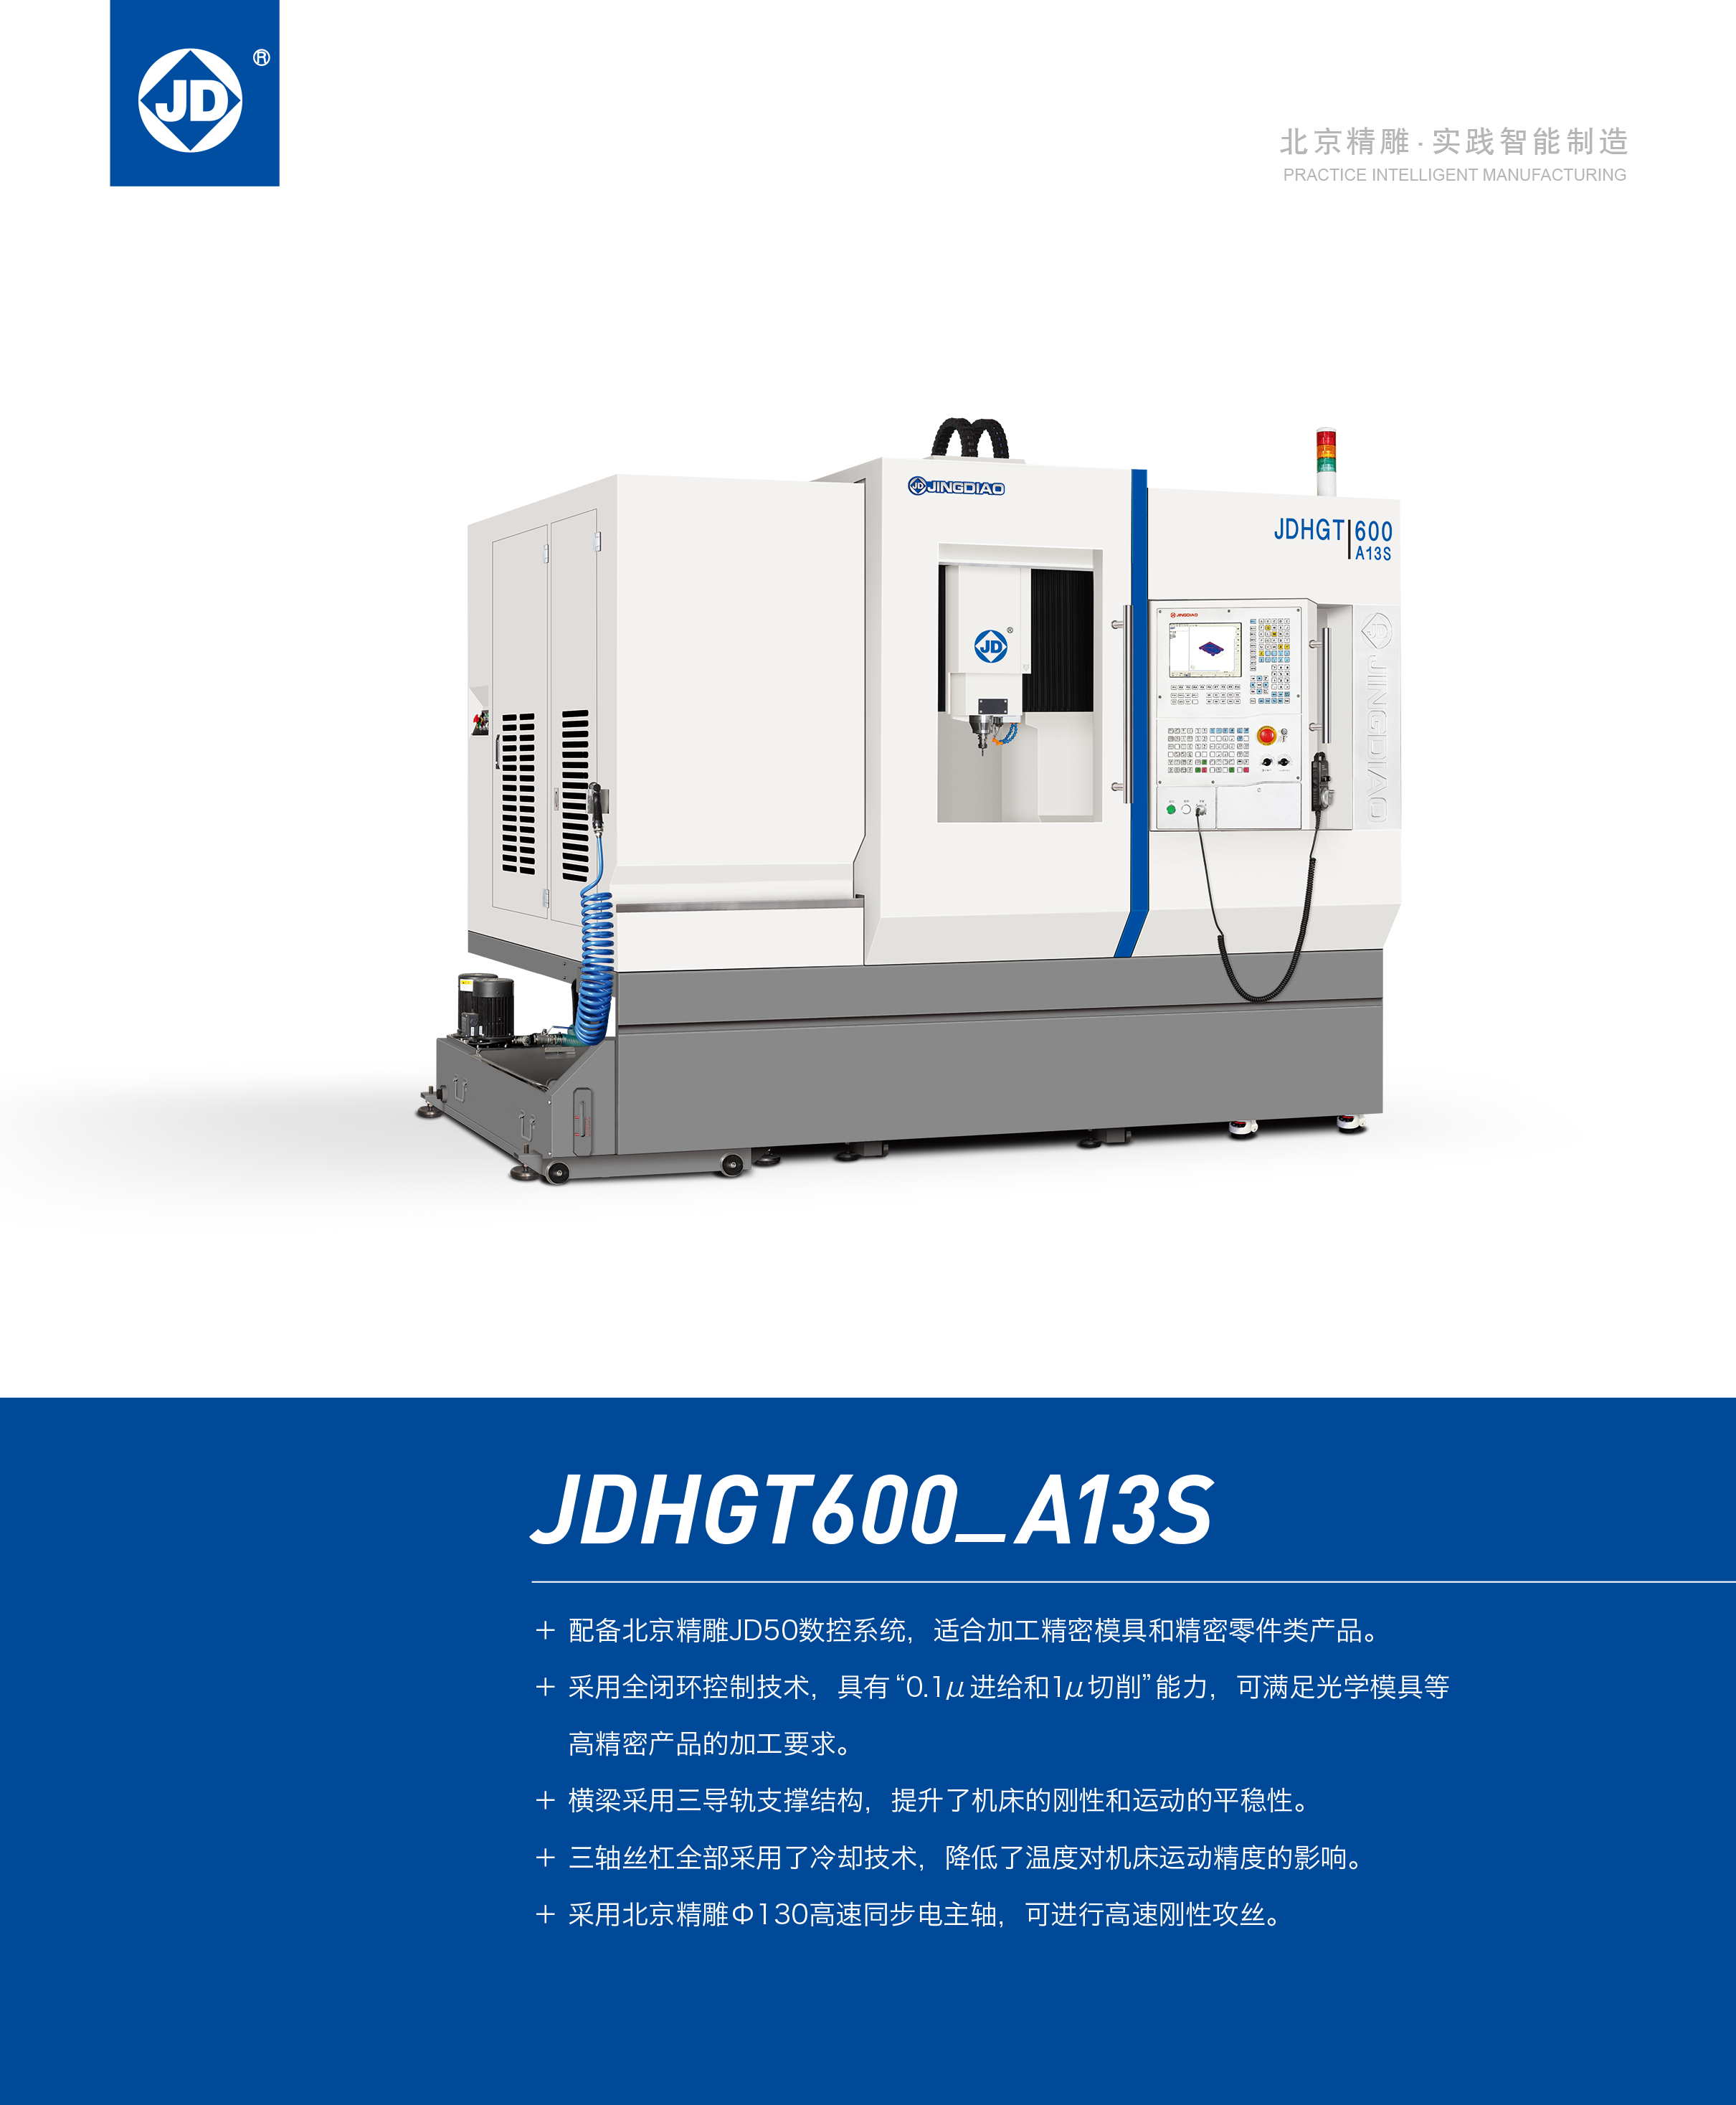 JDHGT600-A13S